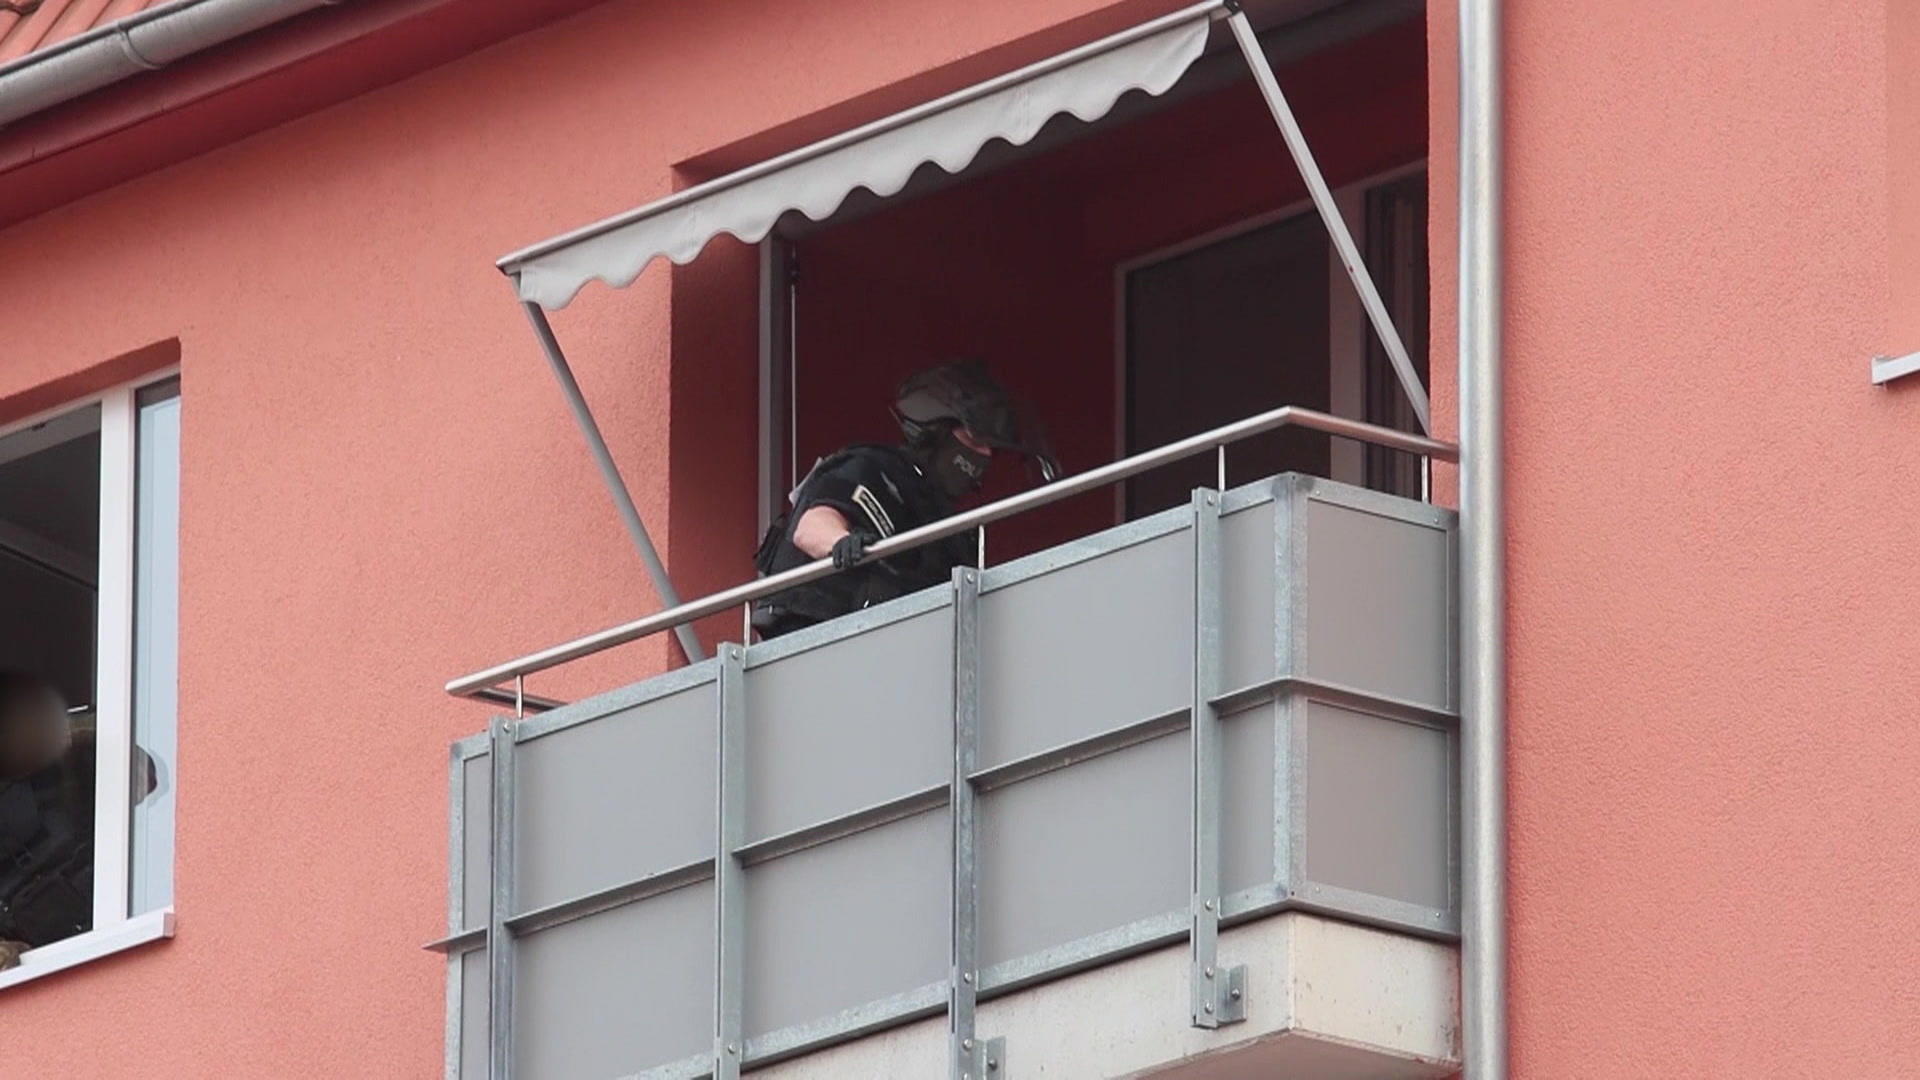 Un uomo lancia azioni di un appartamento contro gli agenti di polizia: operazione SEK!  Mobili e barra metallica